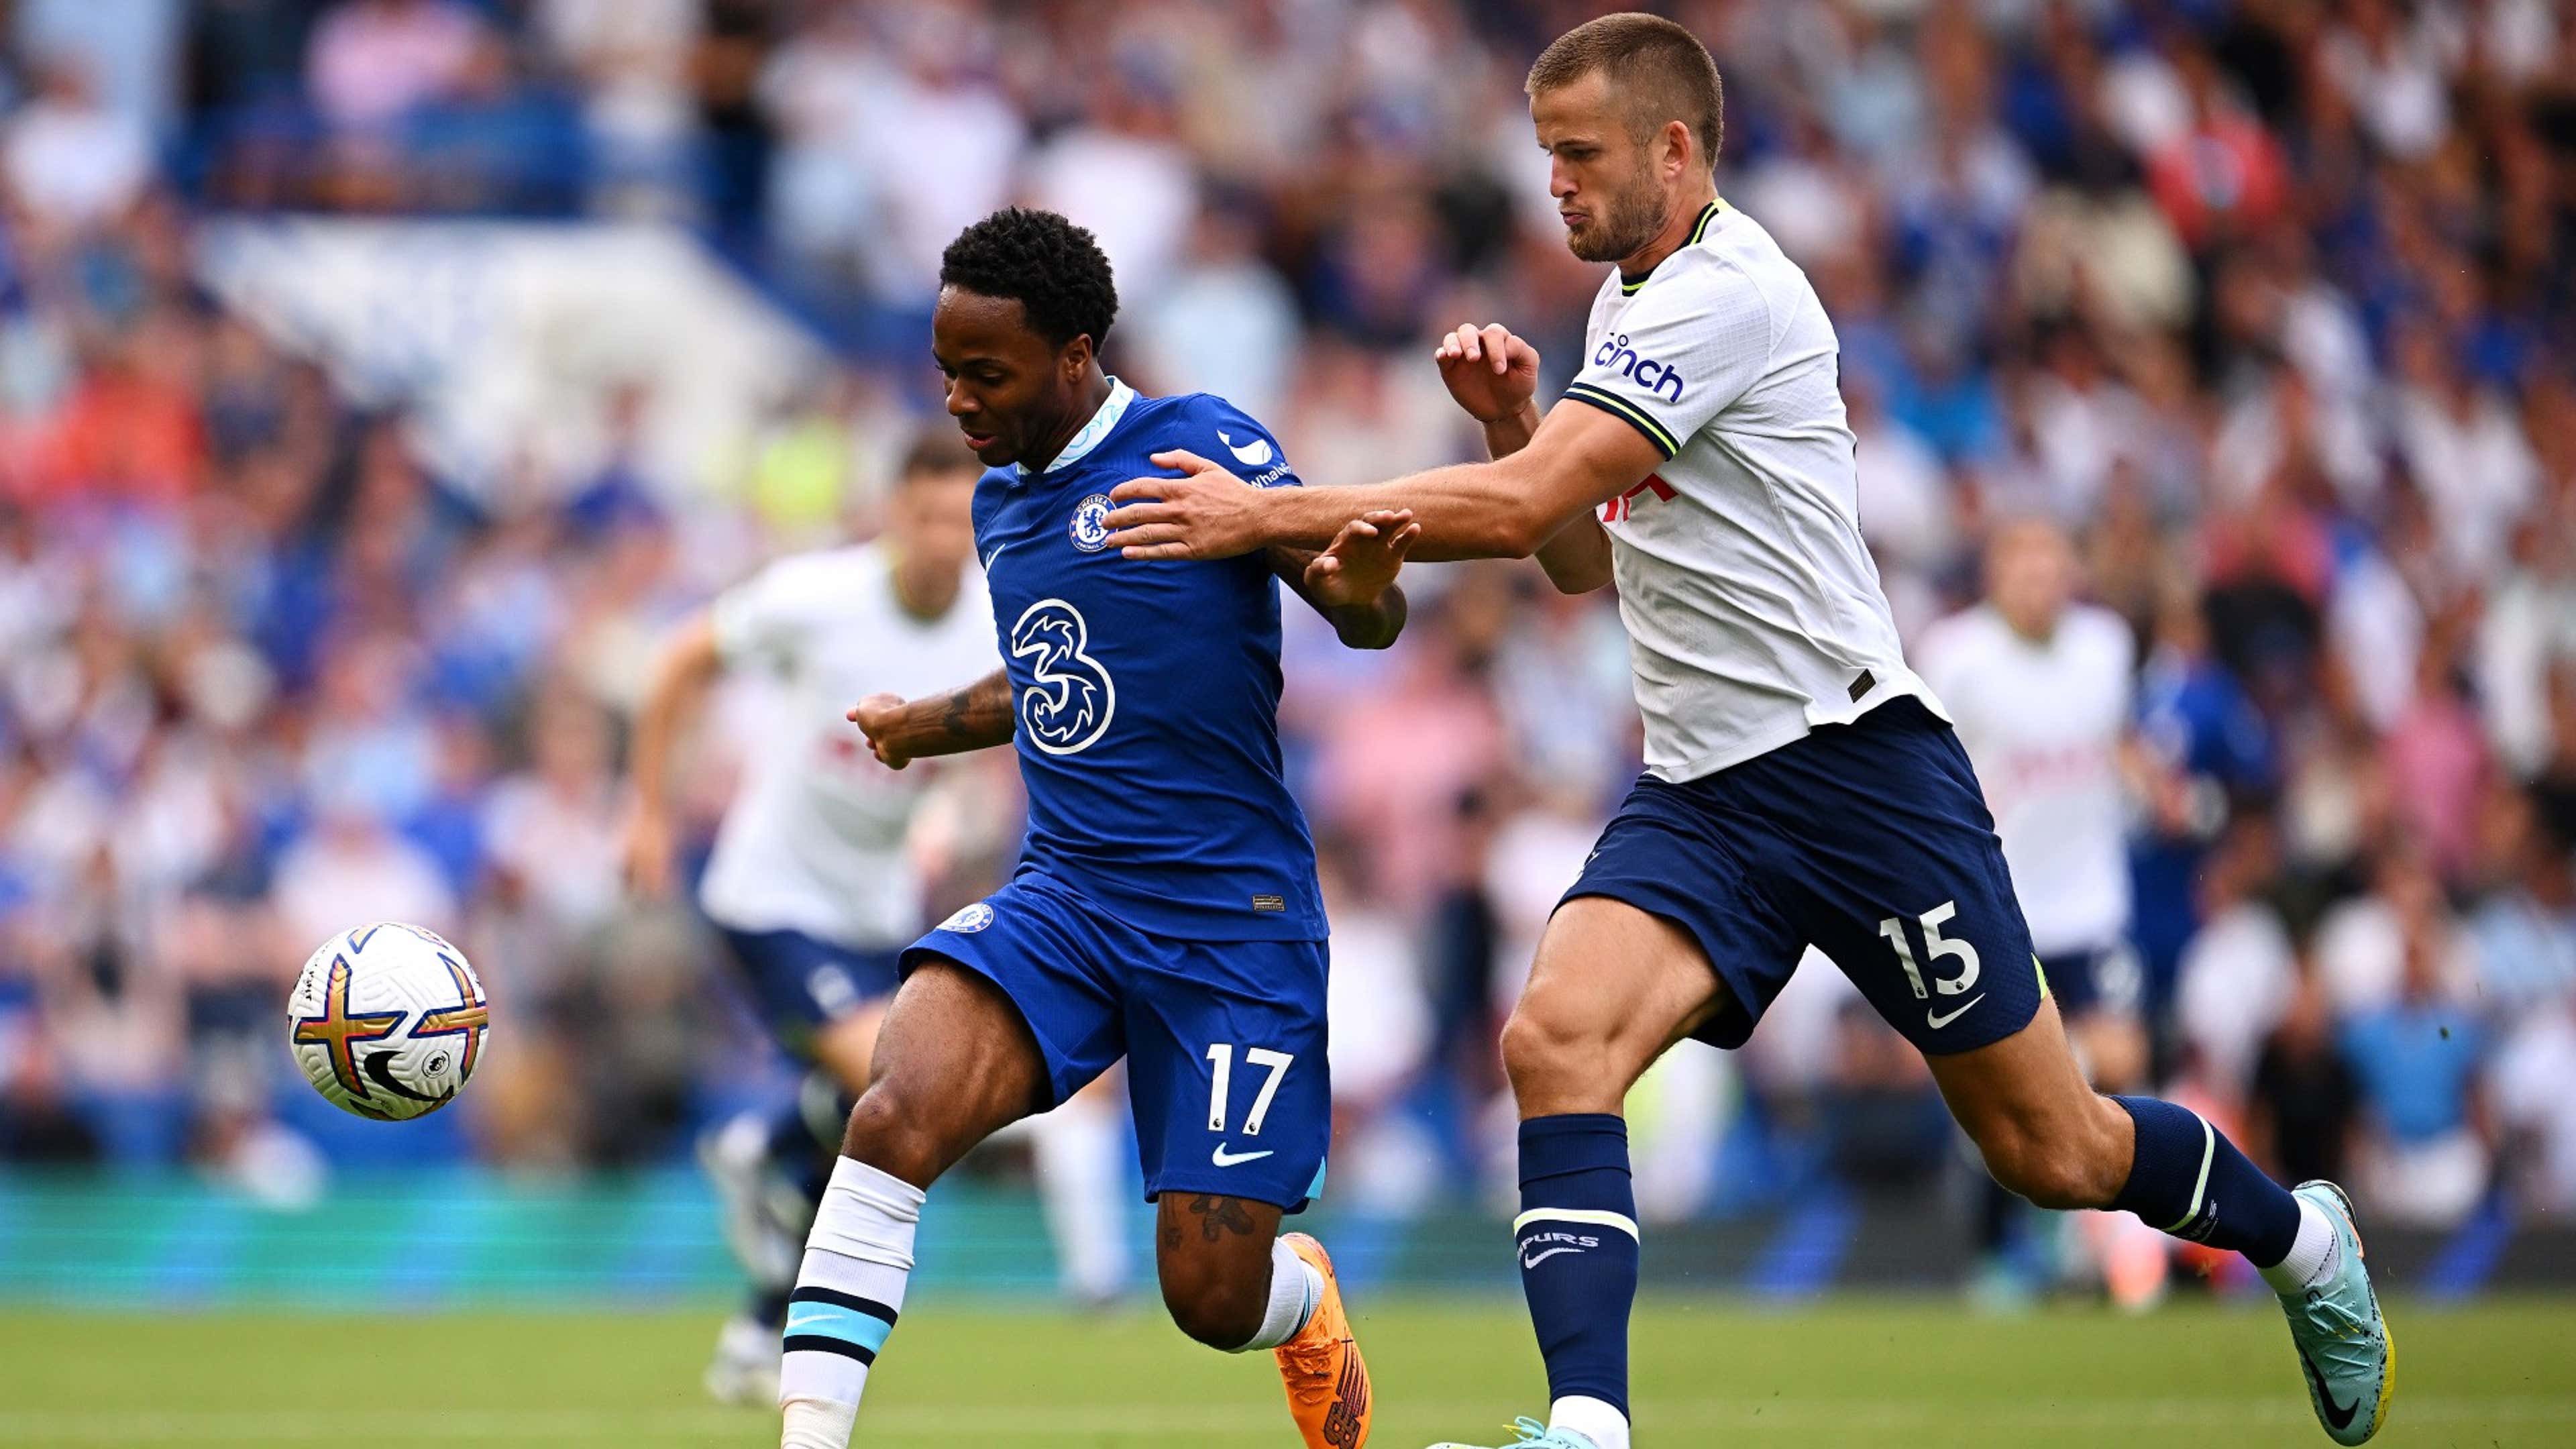 Com gol de Kane, Tottenham busca empate no fim contra o Chelsea